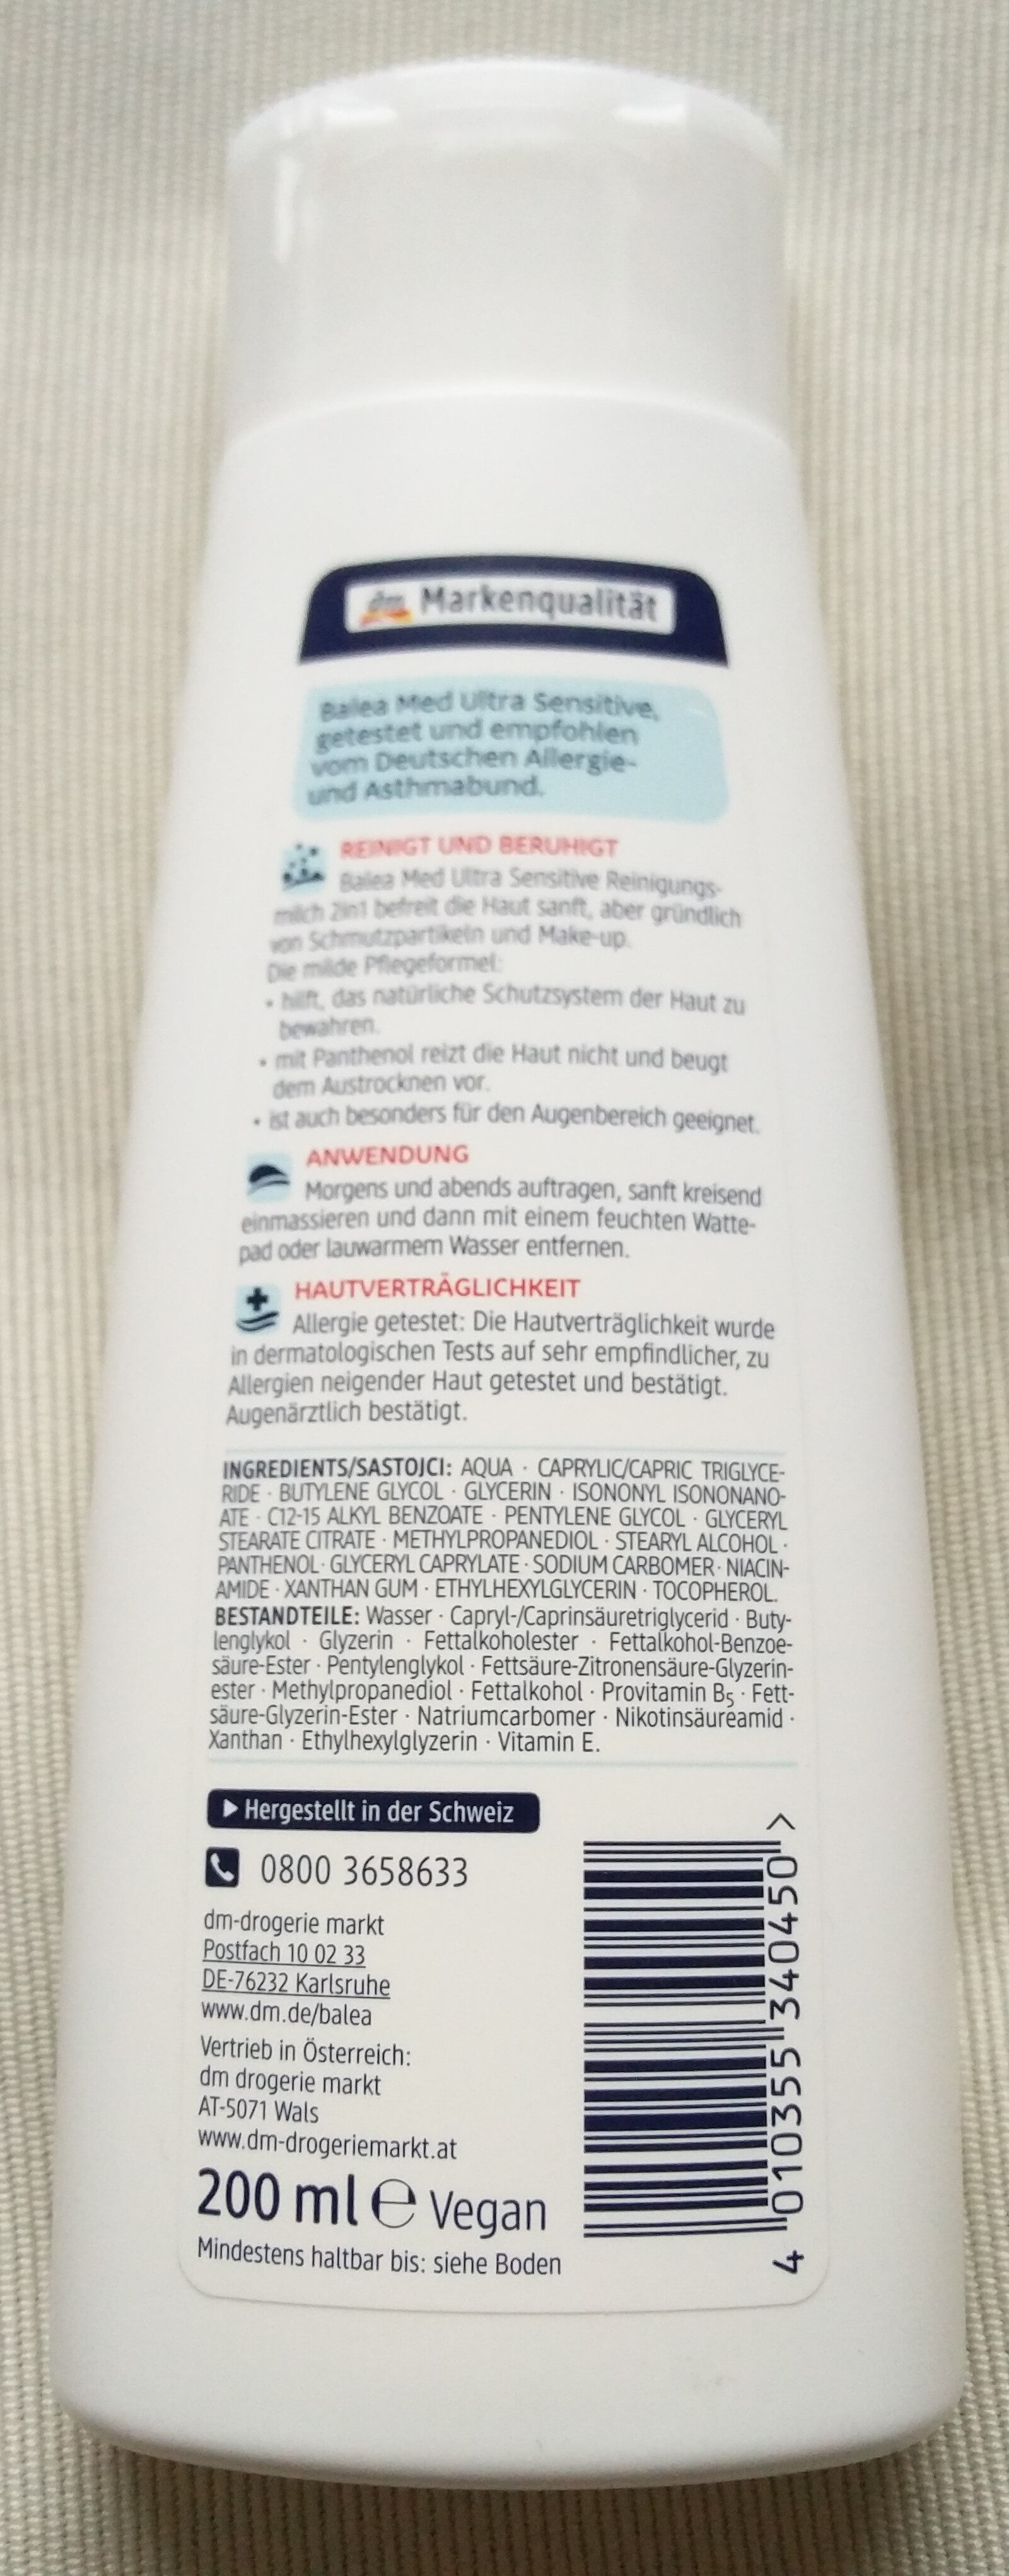 Ultra Sensitive Reinigungsmilch (2 in 1, für Gesicht und Augen) - Product - en